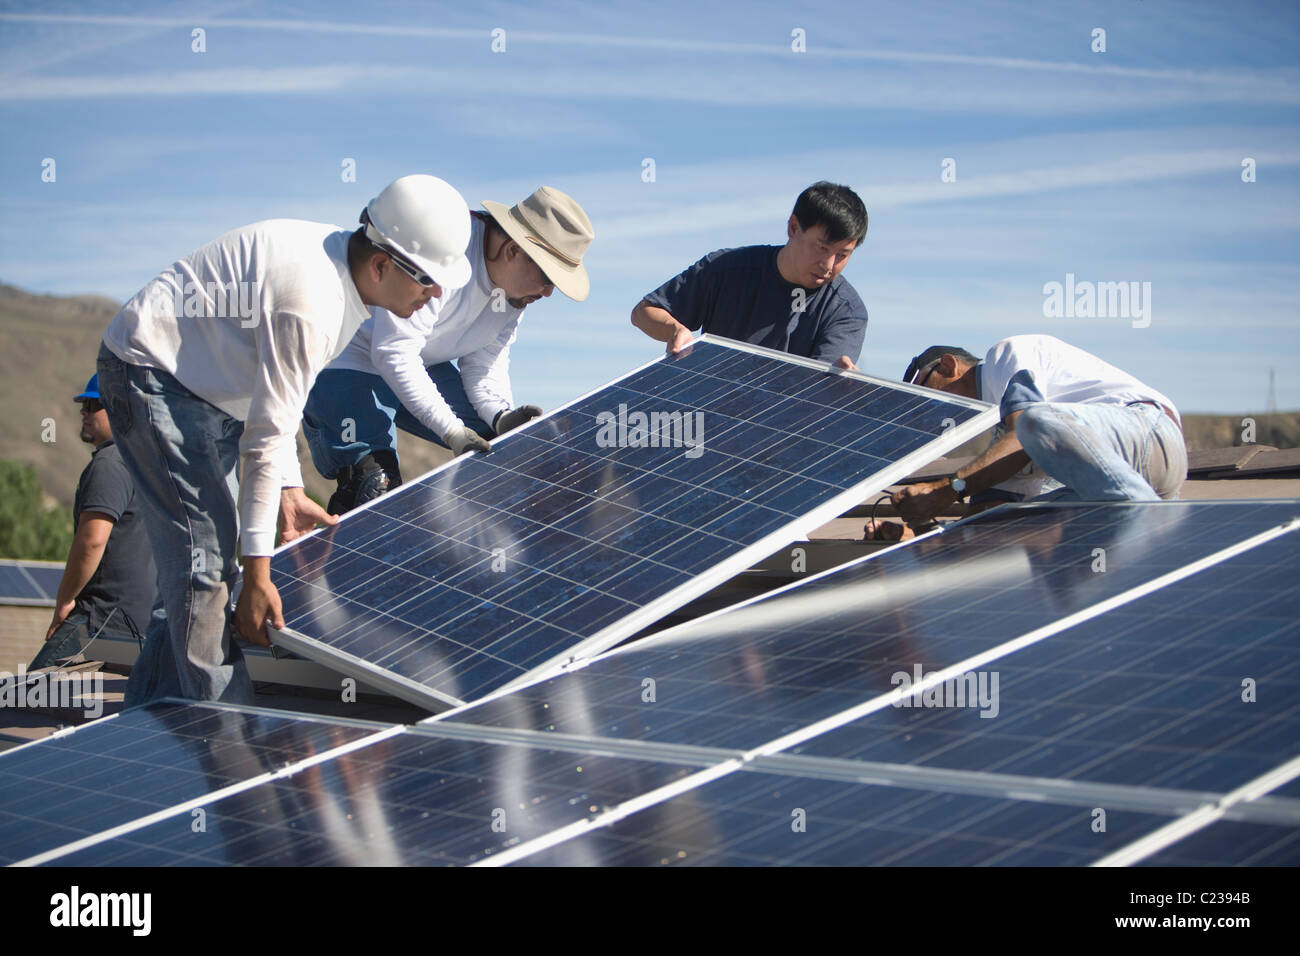 Un groupe d'hommes qui travaillent sur les panneaux solaires Banque D'Images